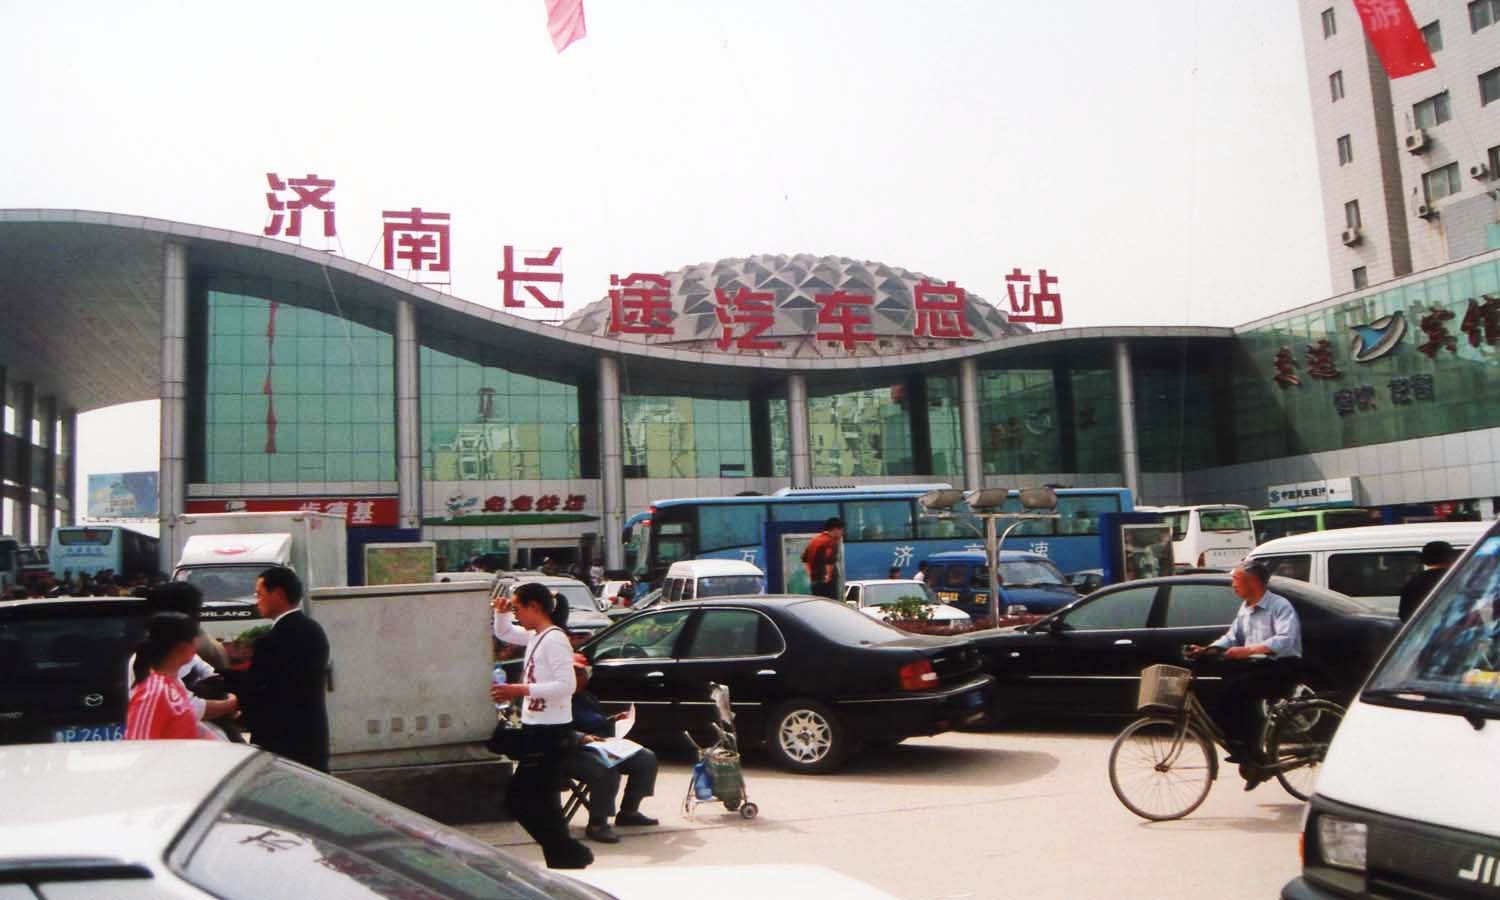 中国南部物流枢纽项目铁路专用线预可研通过中铁广州局集团评审 - 广州市广百物流有限公司